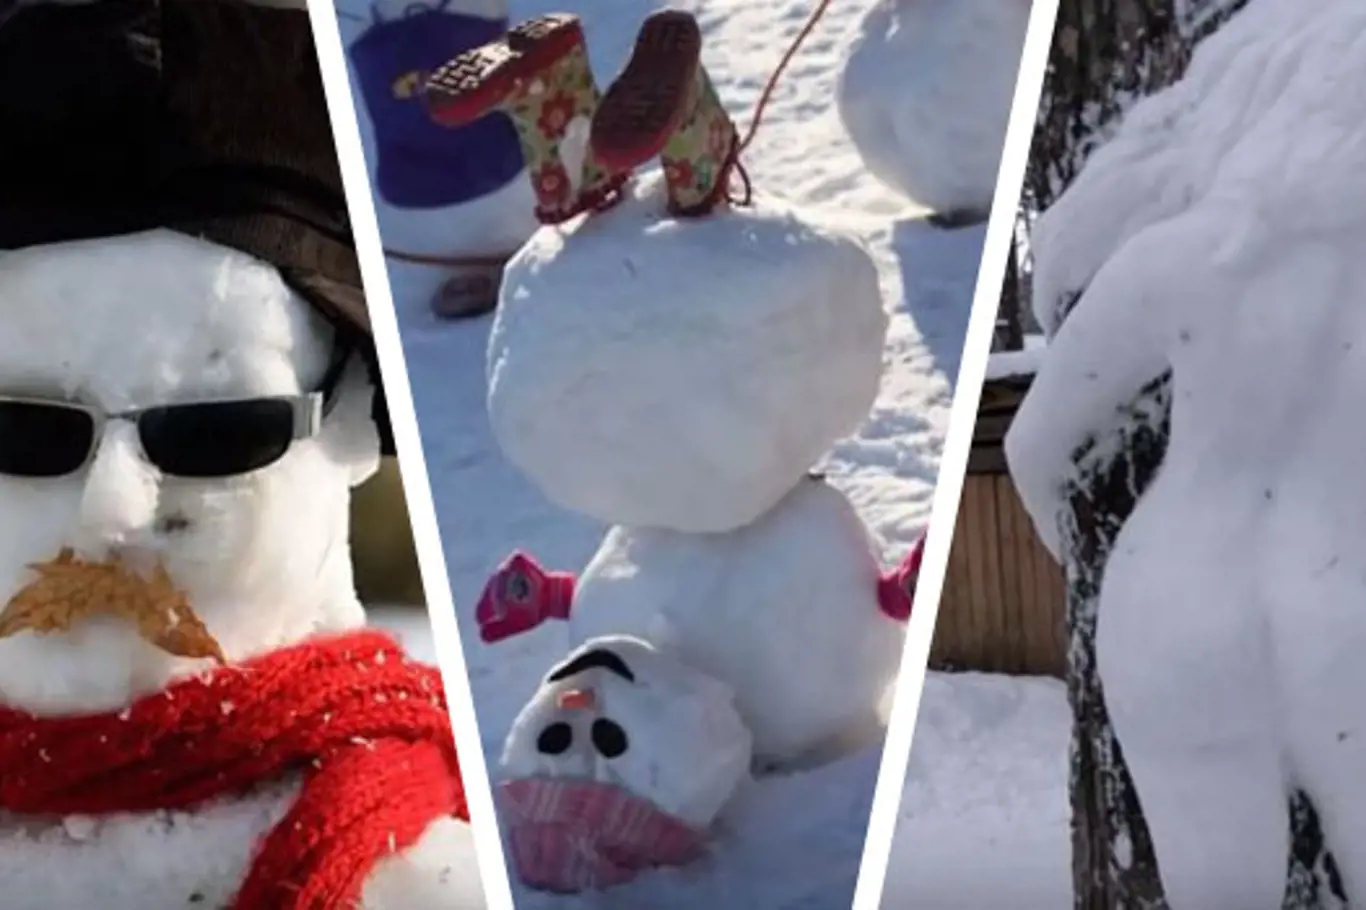 Tip na víkend: Megagalerie neskutečných výtvorů ze sněhu! Pustíte se do stavění?